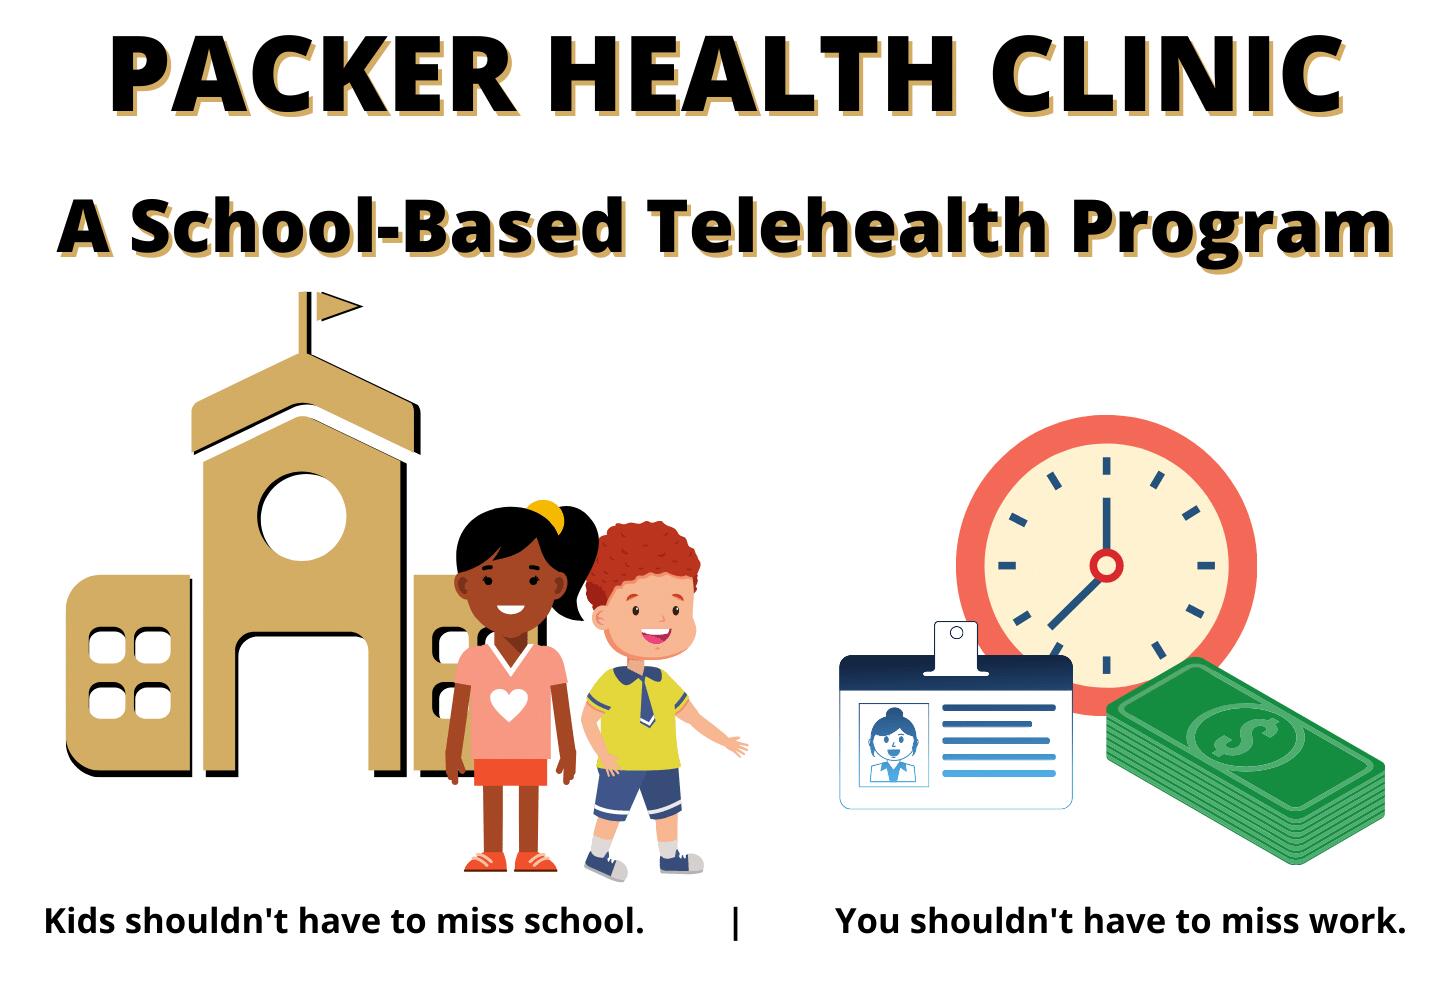 Packer School-Based Telehealth Clinic Program